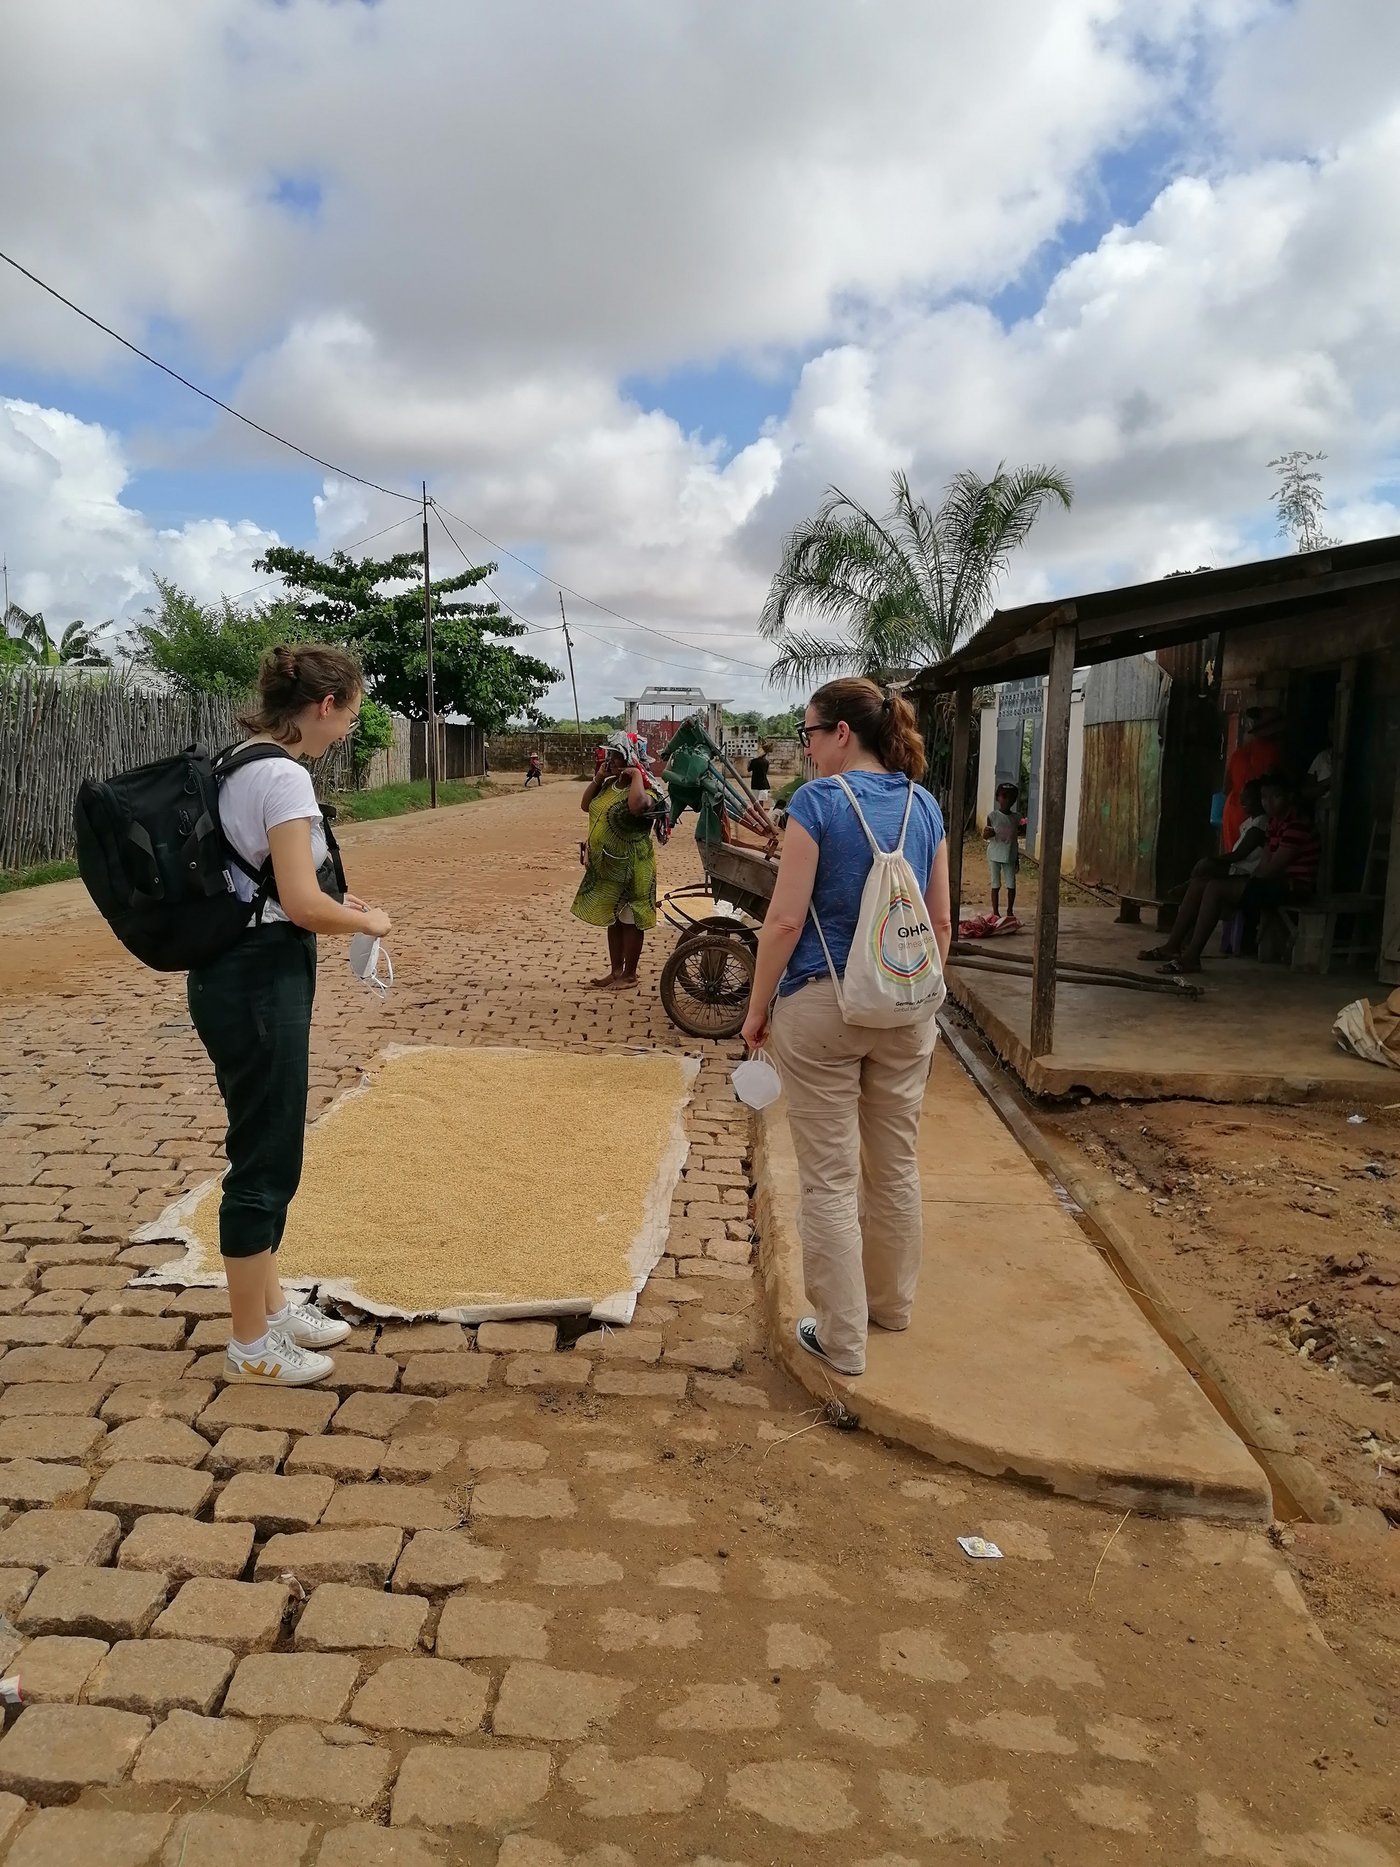 Zu sehen ist eine gepflasterte Straße in Madagaskar, an dessen rechten Seite kleine Hütten stehen. Auf einer Plane auf der Straße liegt Reis, der in der Sonne getrocknet wird, davor laufen zwei Forscherinnen auf dem kleinen Gehweg.